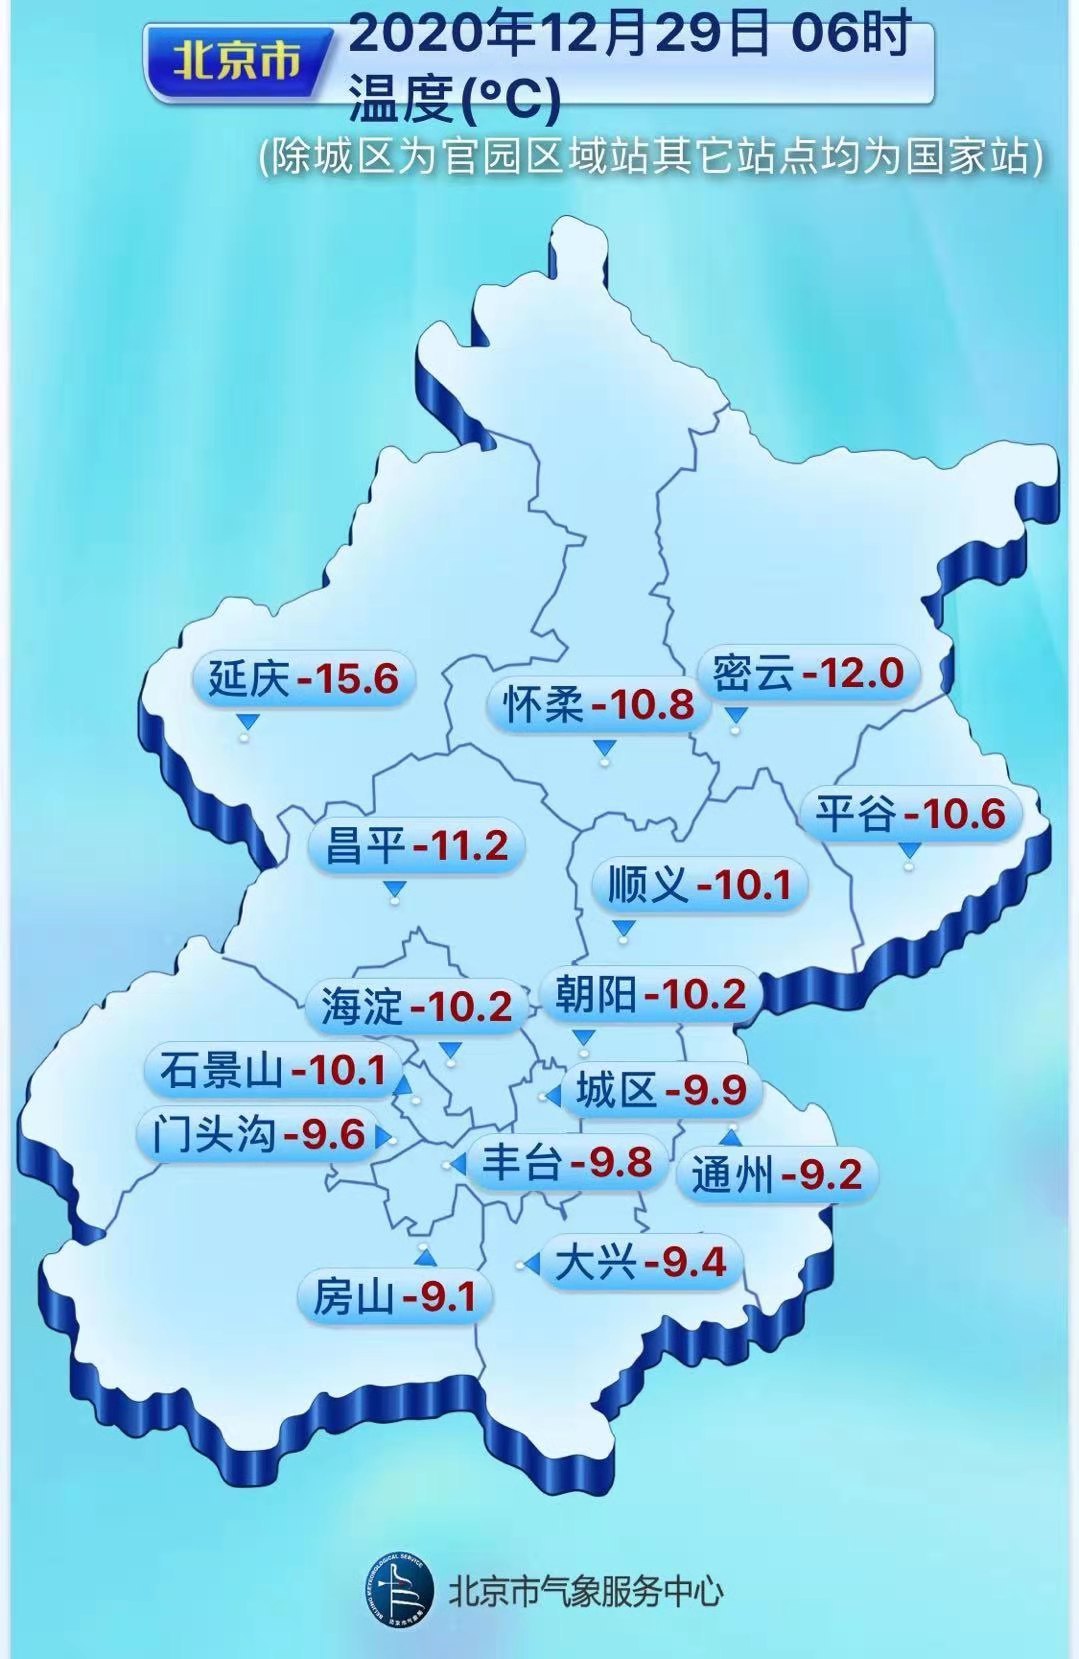 瑟瑟发抖！现在北京室外大部分地区-10℃，北风六七级